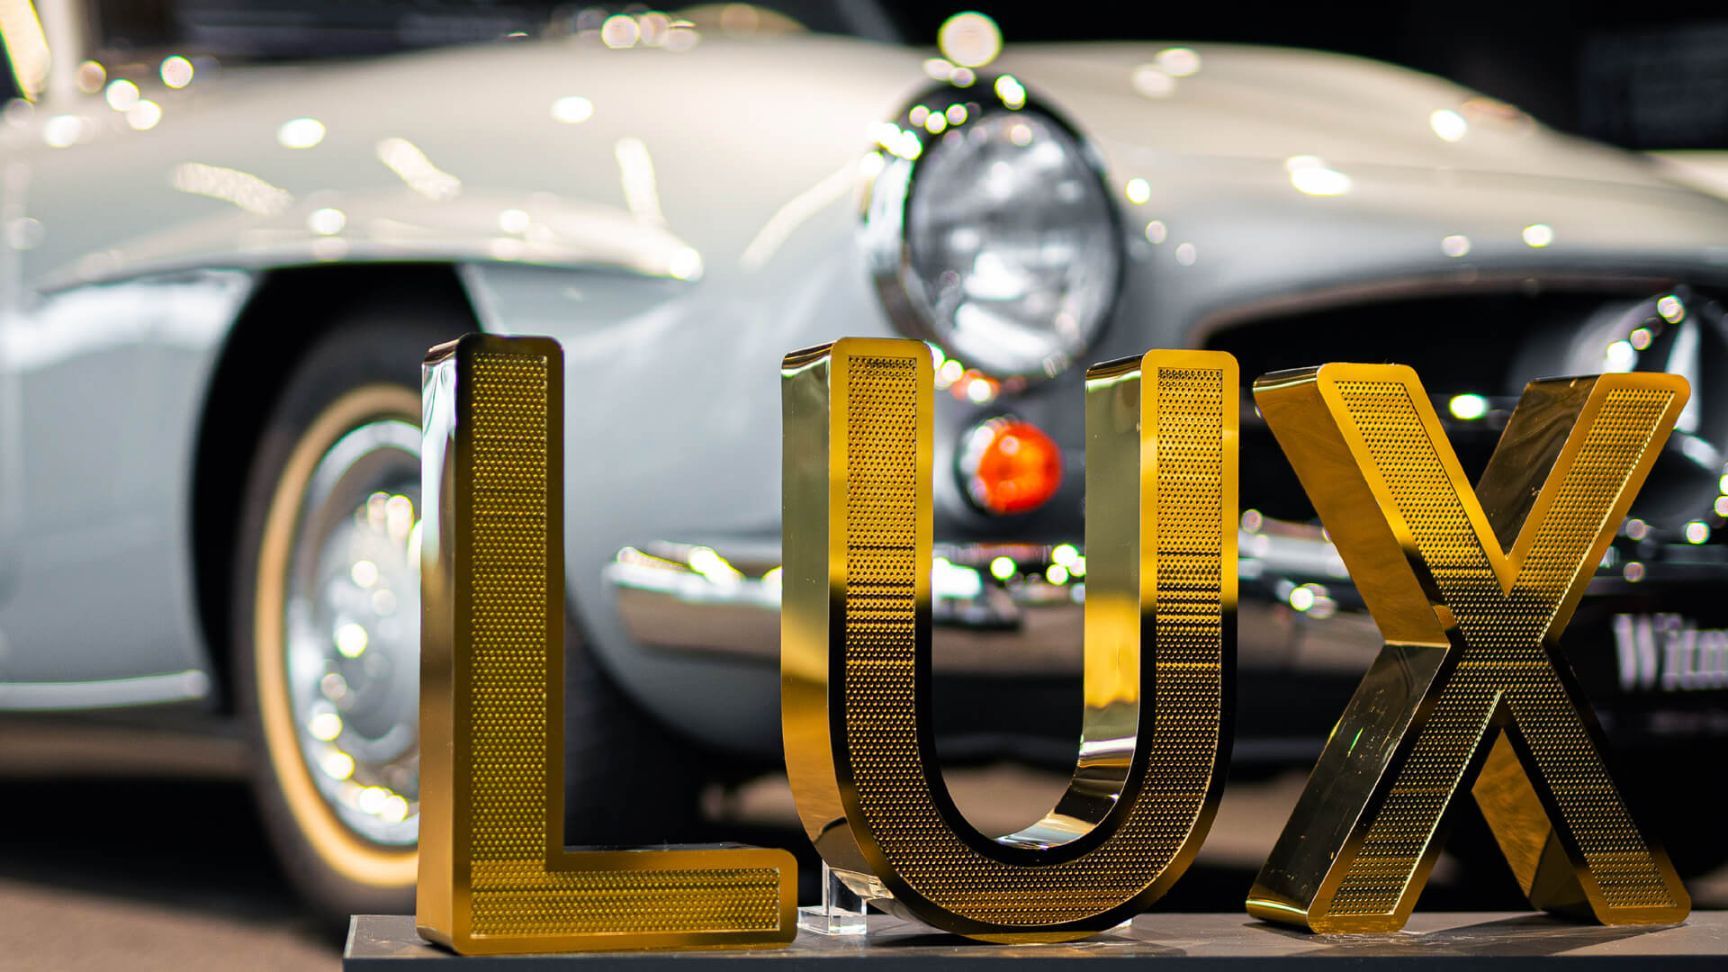 LUX geperforeerde roestvrijstalen letters - LUX letters in goudglanzend geperforeerd roestvrij staal, in de showroom van Mercedes